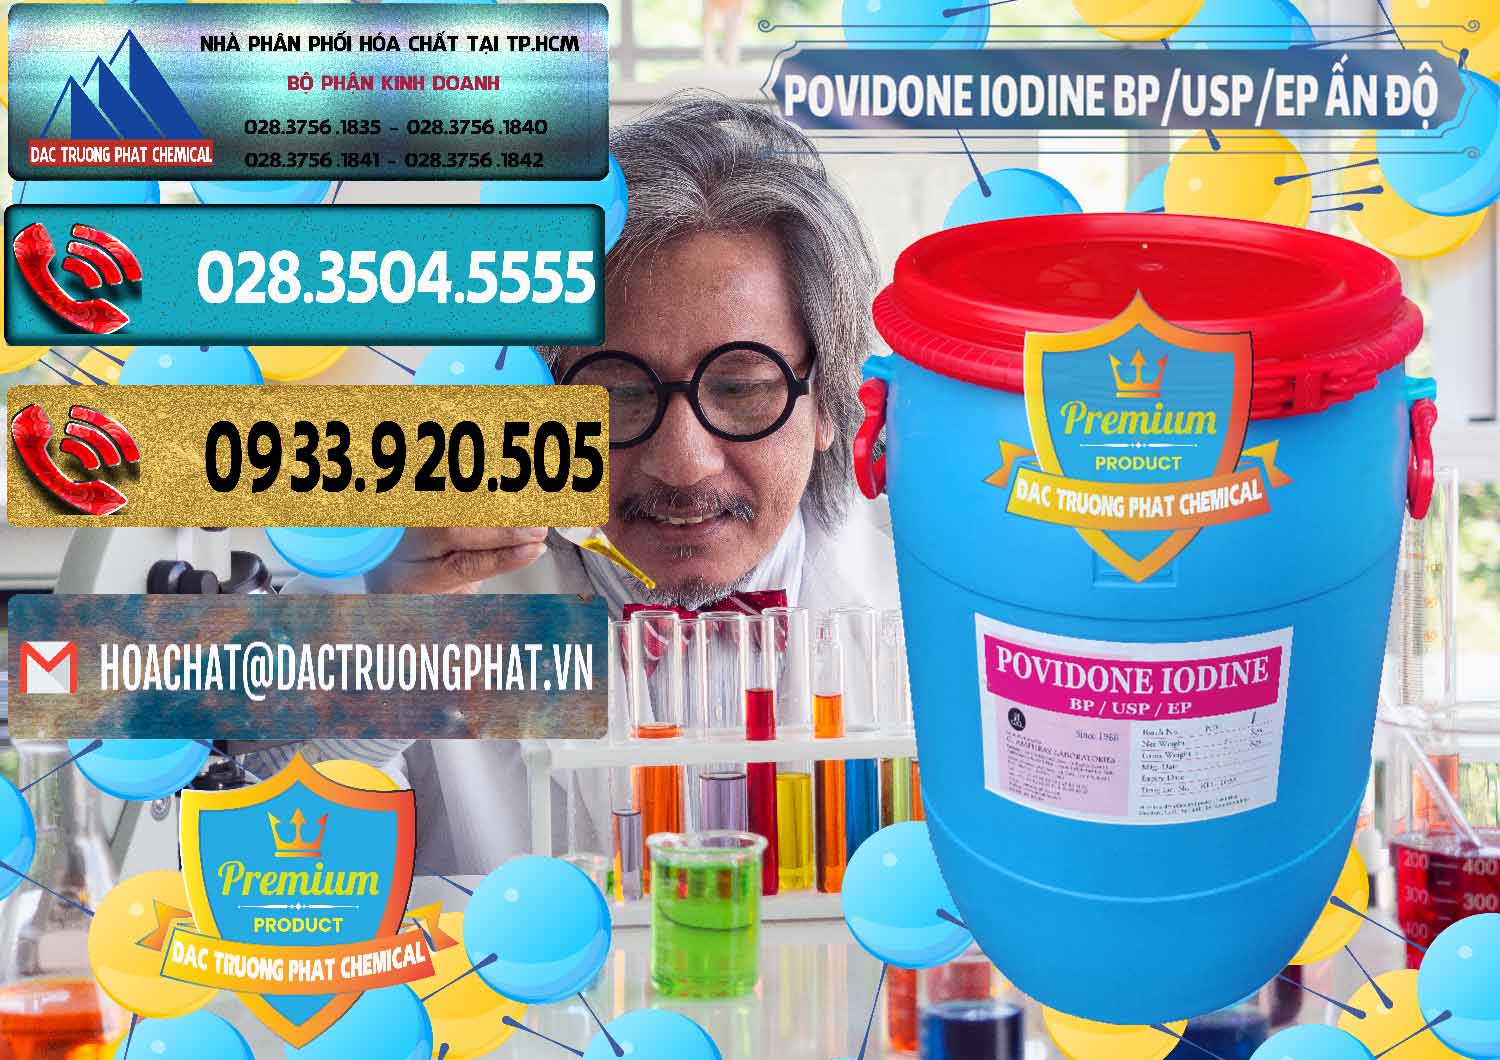 Cty bán & cung ứng Povidone Iodine BP USP EP Ấn Độ India - 0318 - Chuyên bán _ cung cấp hóa chất tại TP.HCM - hoachatdetnhuom.com